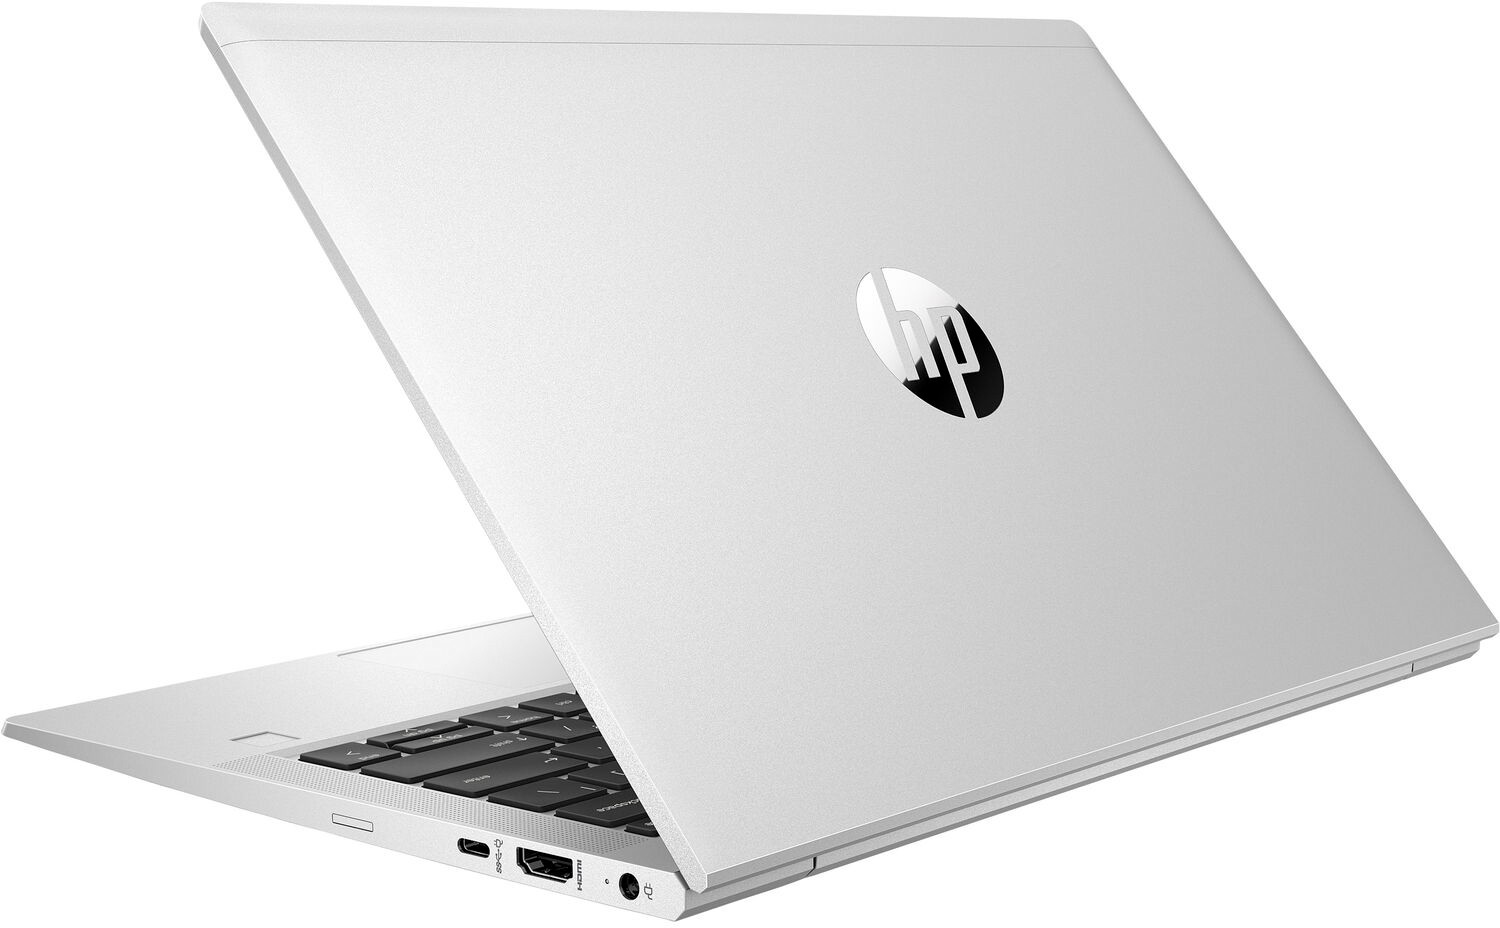 Ноутбук HP ProBook 635 Aero G7 AMD Ryzen 5 4500U 2.3GHz,13.3" FHD (1920x1080) IPS 400cd IR ALS AG,16Gb DDR4-3200MHz(1),512Gb SSD NVMe,Al+Mg Case,53Wh LL FC,FPS,Kbd Bl+SR,0.99kg,1yw,Win10Pro-39385